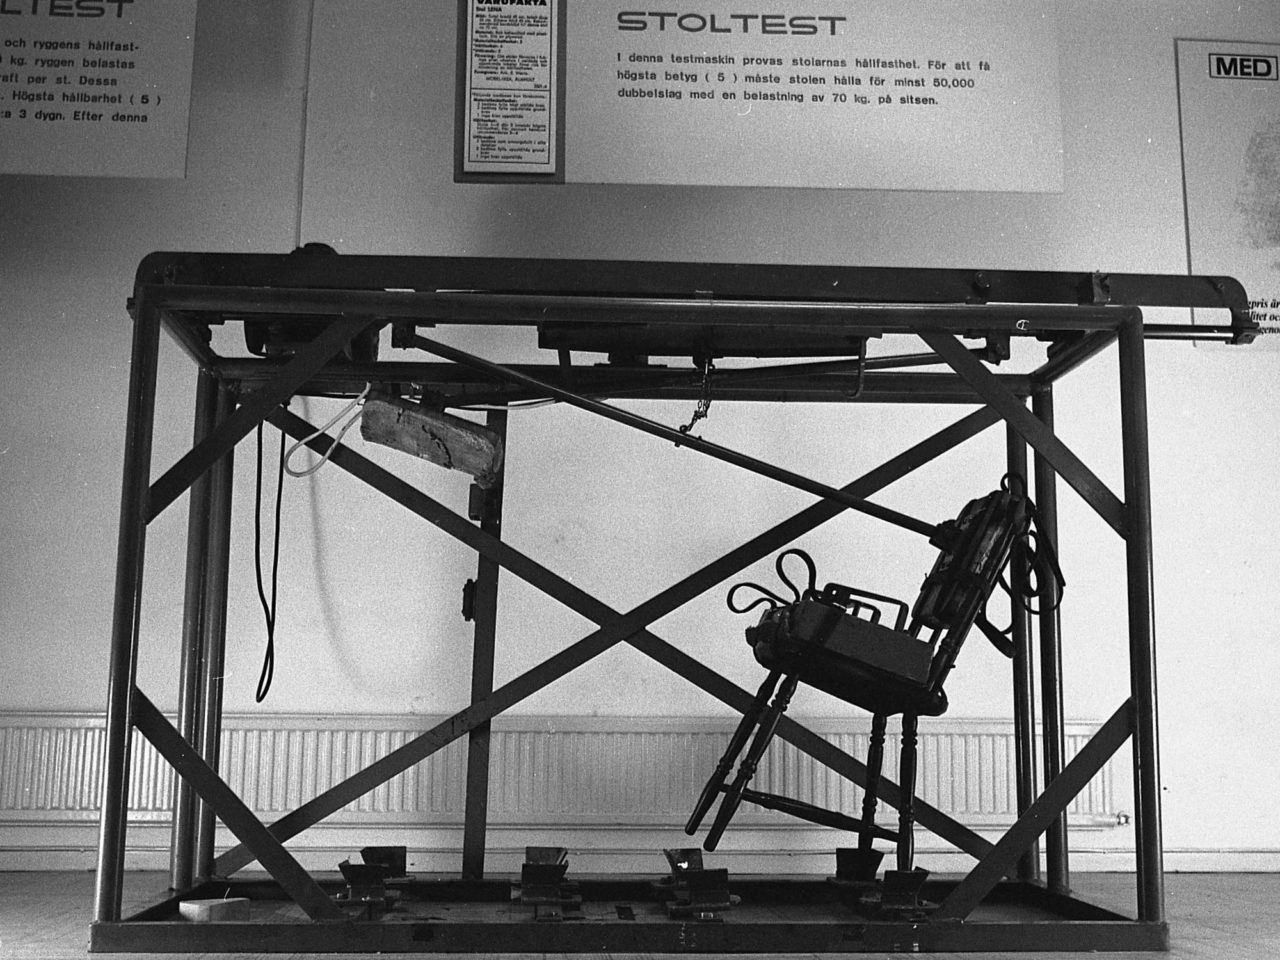 Große Testmaschine, in der ein Stuhl gesichert ist. Darüber ein Schild mit Aufschrift „Stuhltest“ und Beschreibung des Tests.